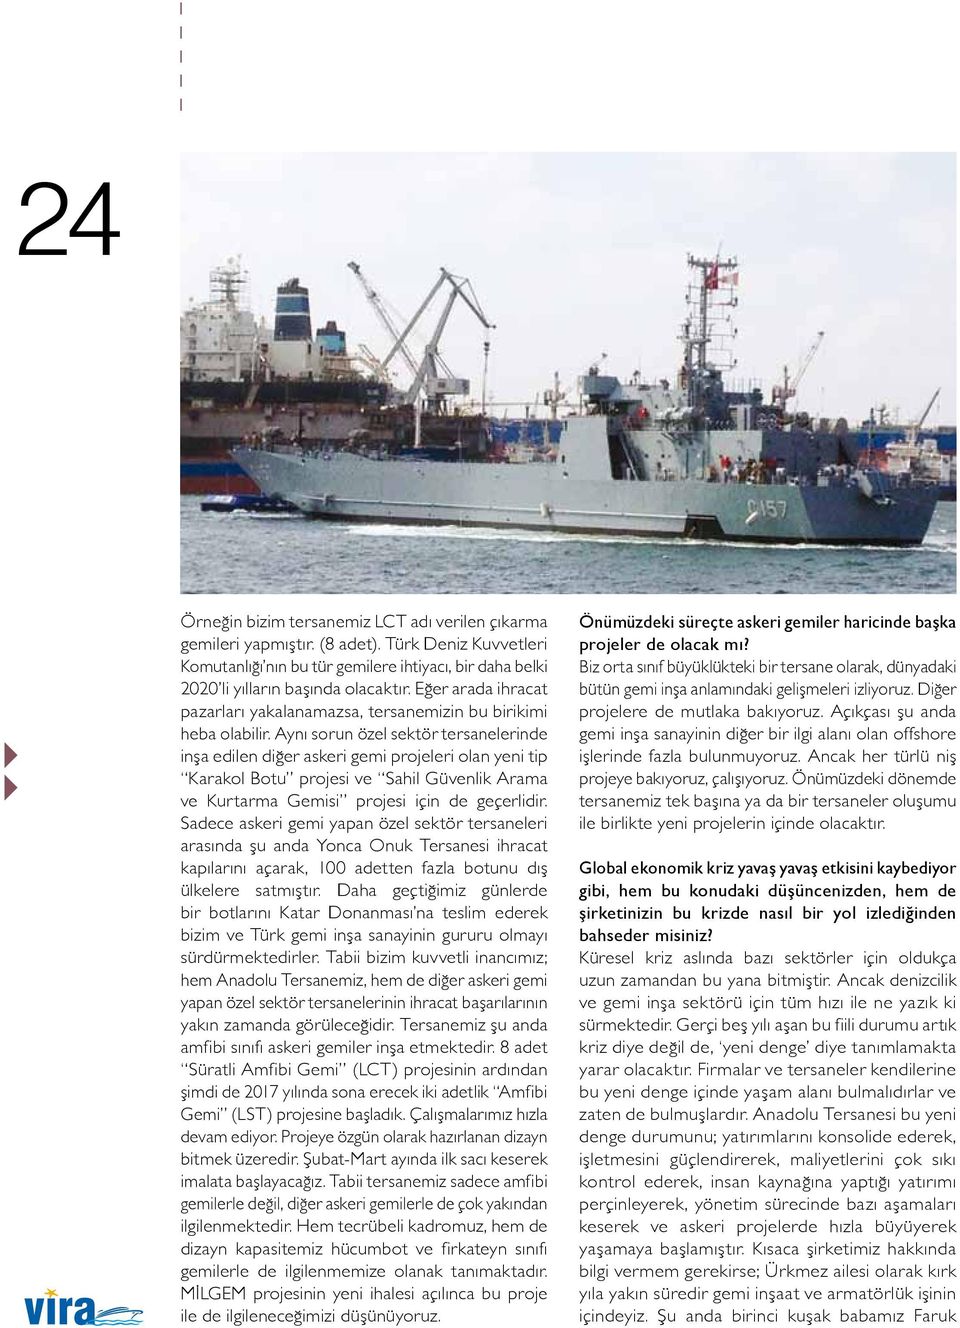 Aynı sorun özel sektör tersanelerinde inşa edilen diğer askeri gemi projeleri olan yeni tip Karakol Botu projesi ve Sahil Güvenlik Arama ve Kurtarma Gemisi projesi için de geçerlidir.